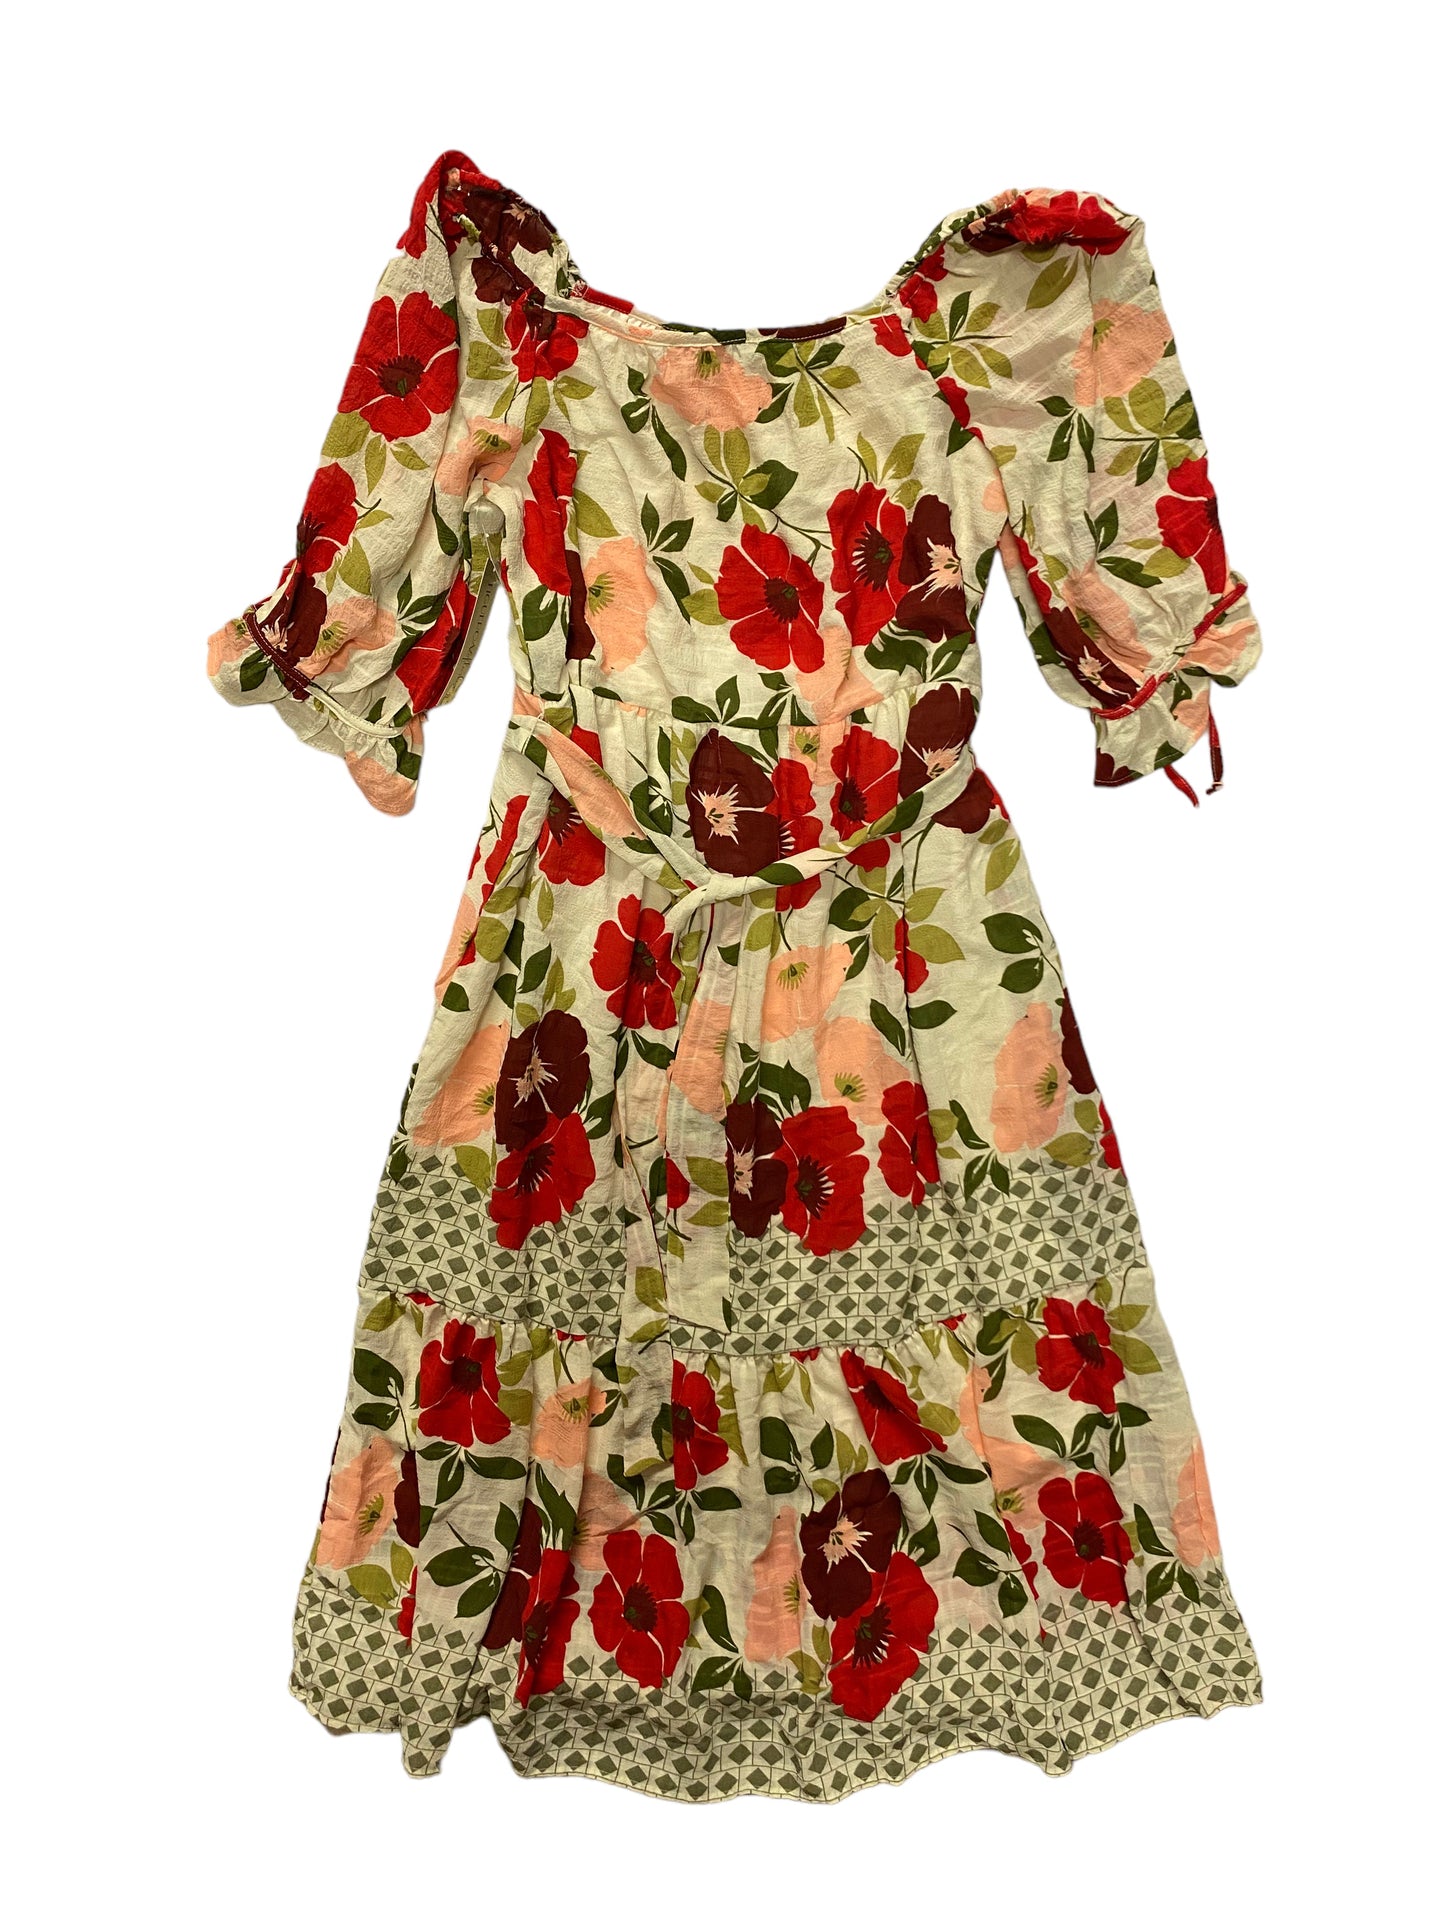 Multi-colored Dress Casual Maxi Cmc, Size L